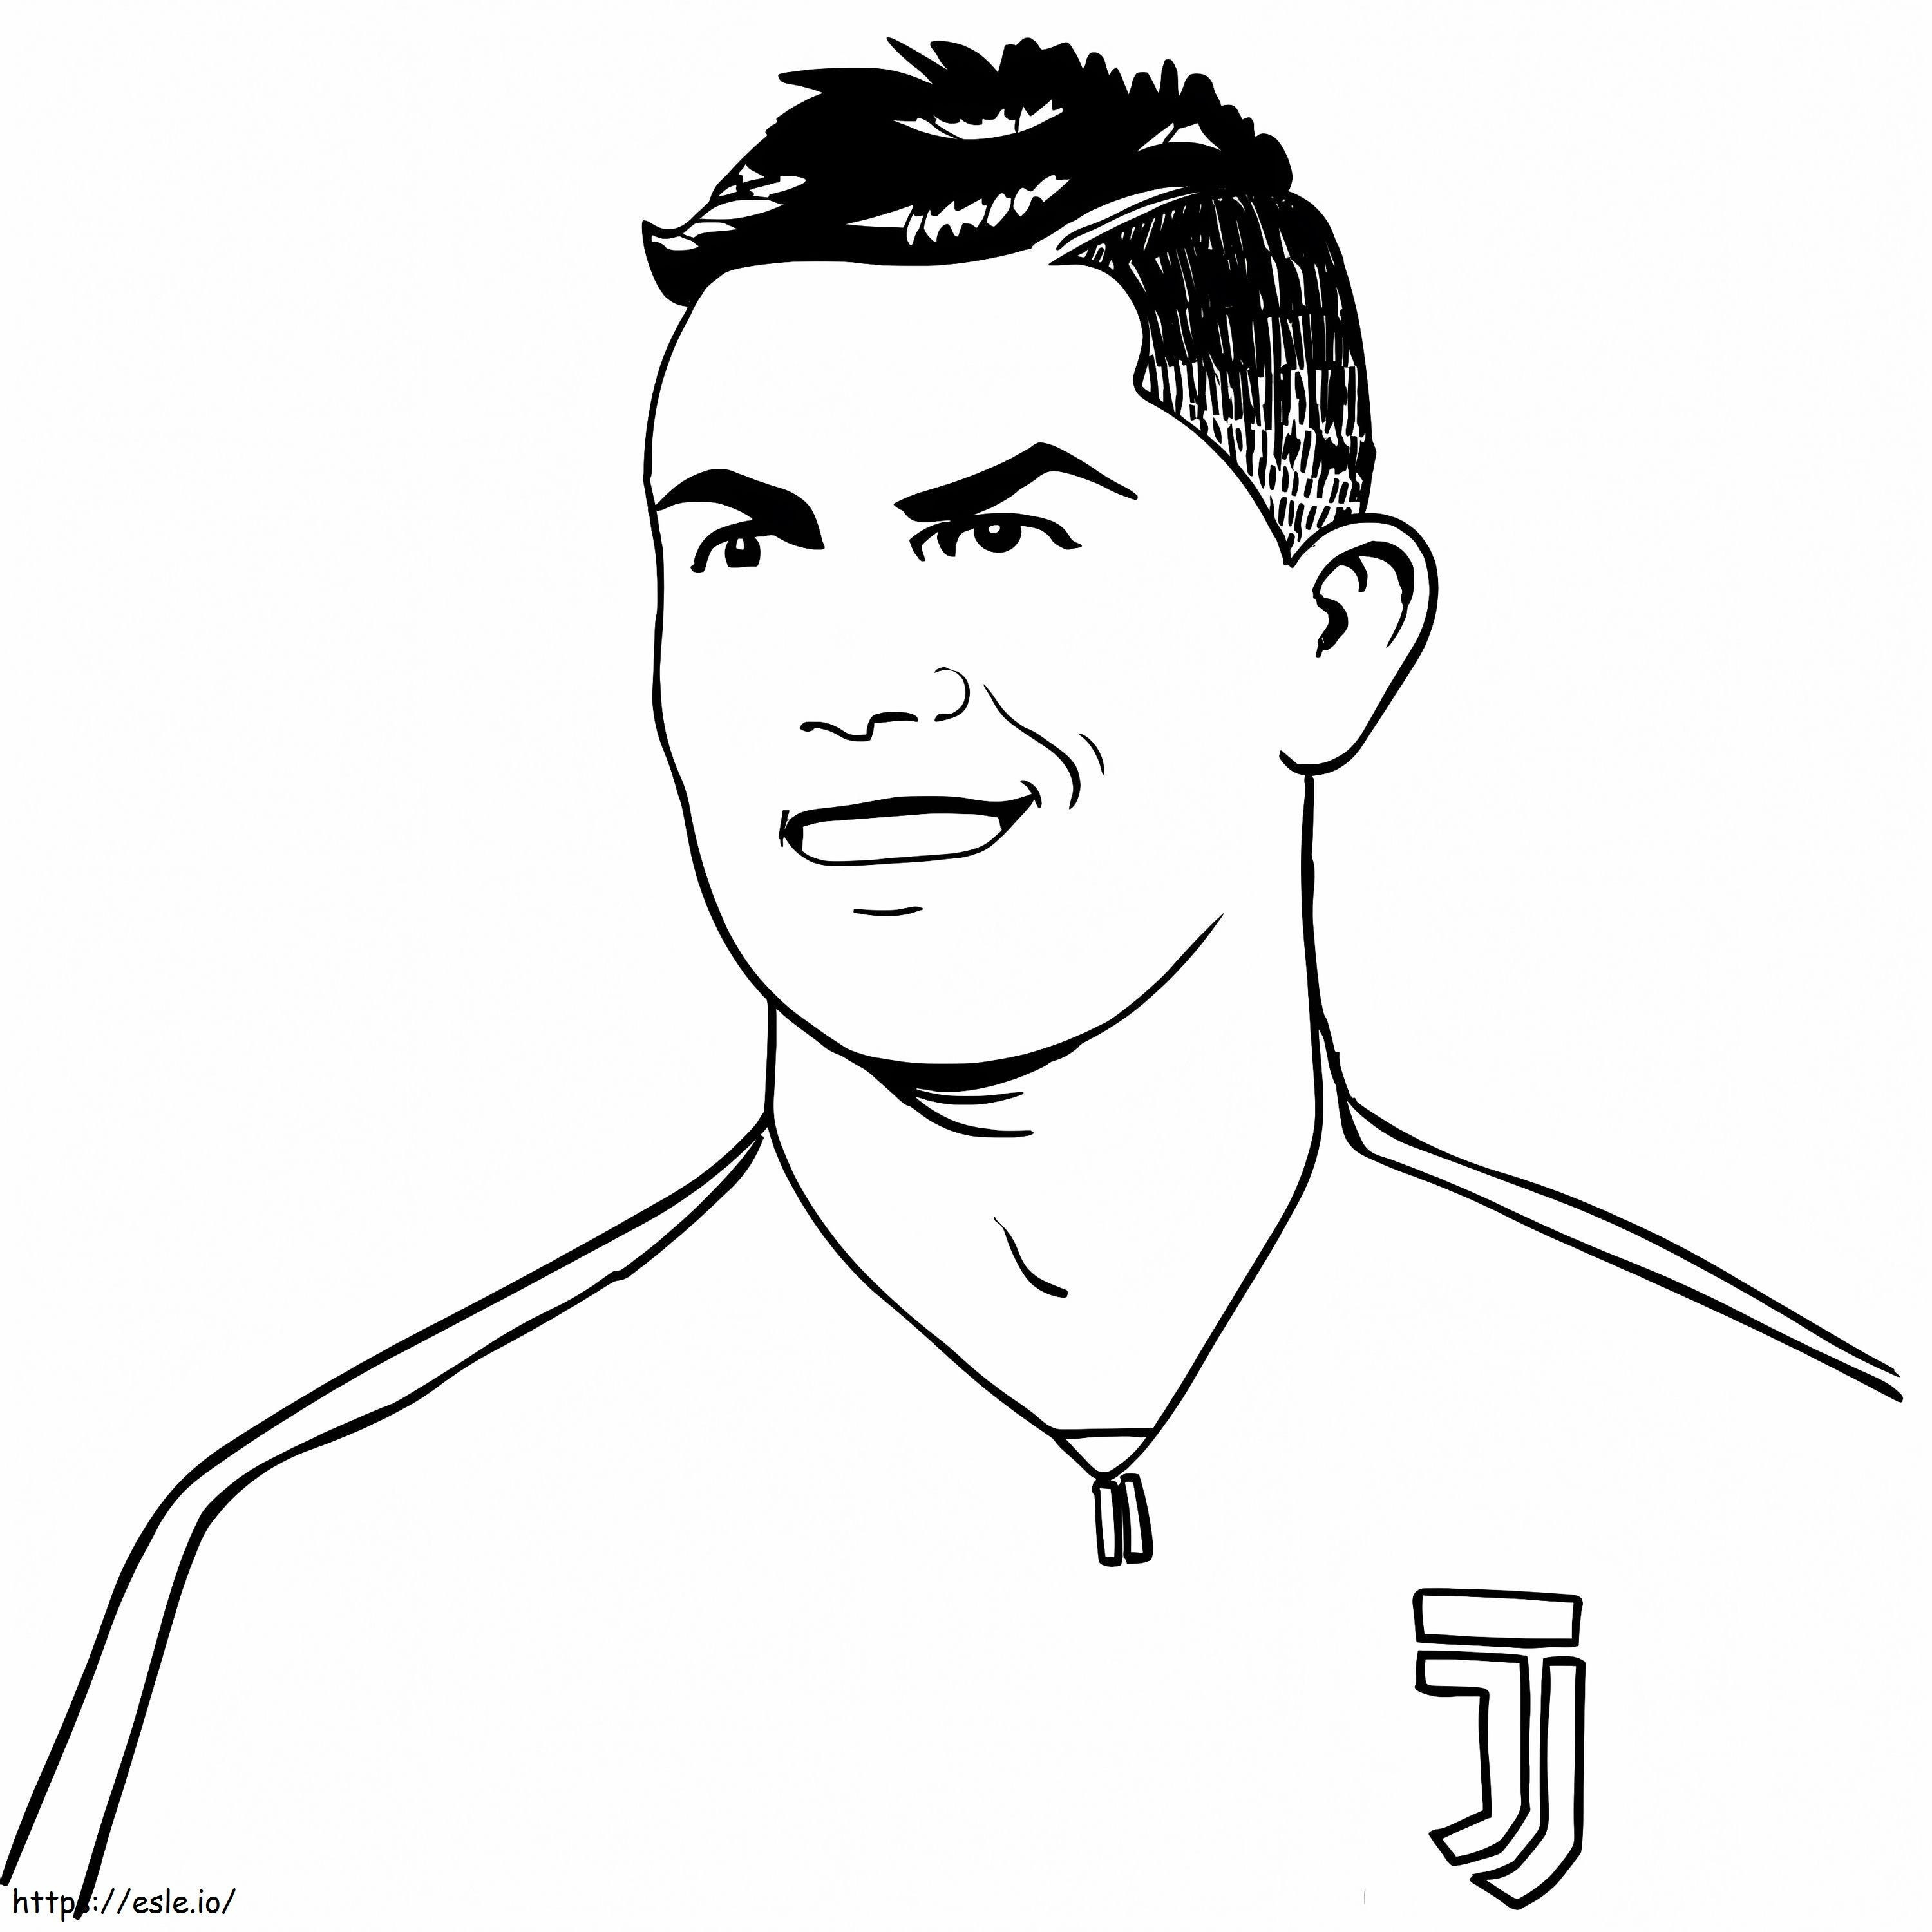 Cristiano Ronaldo 6 kolorowanka